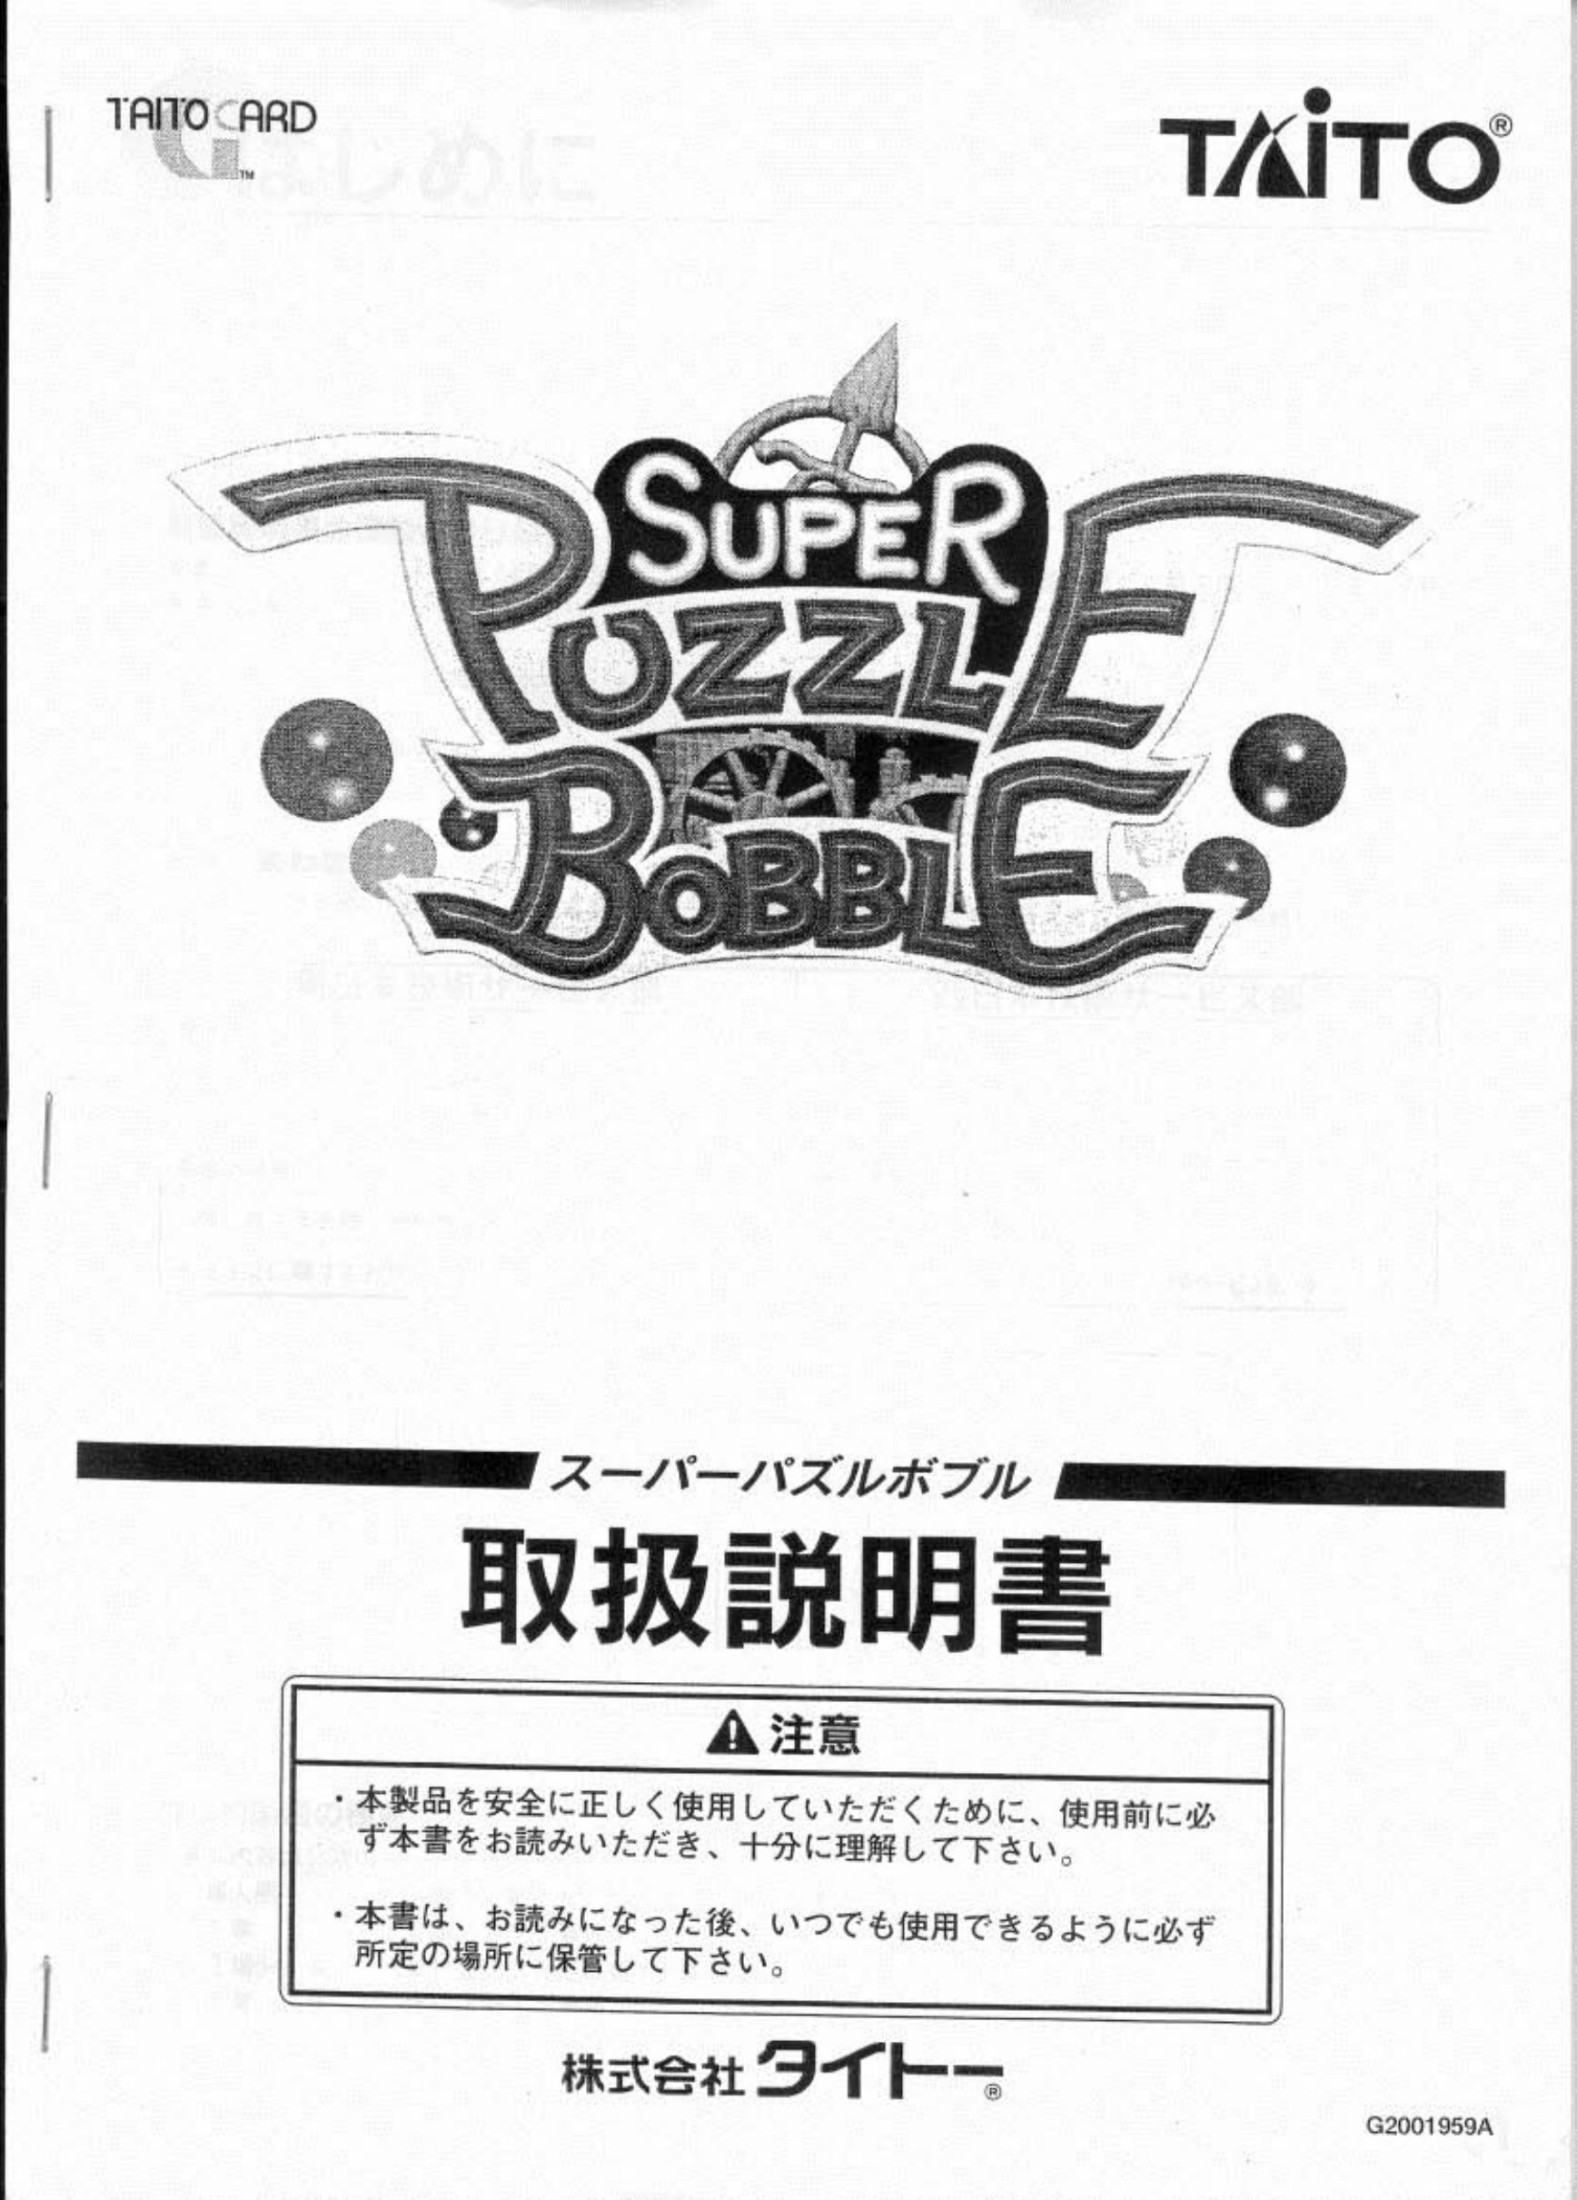 Super Puzzle Bobble Manual (Japan)